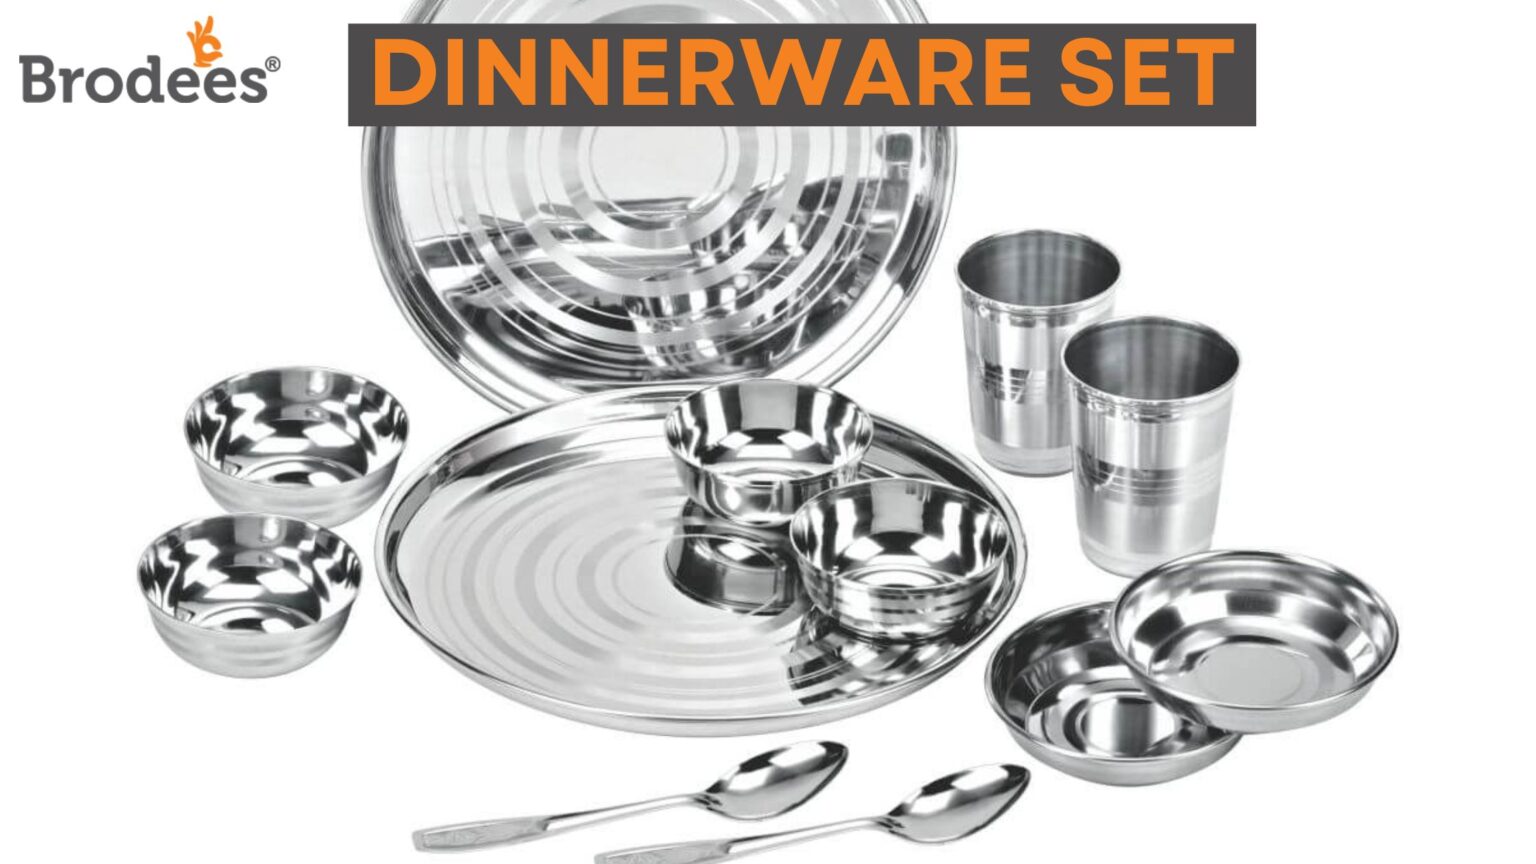 Brodees Dinnerware & Serveware sets